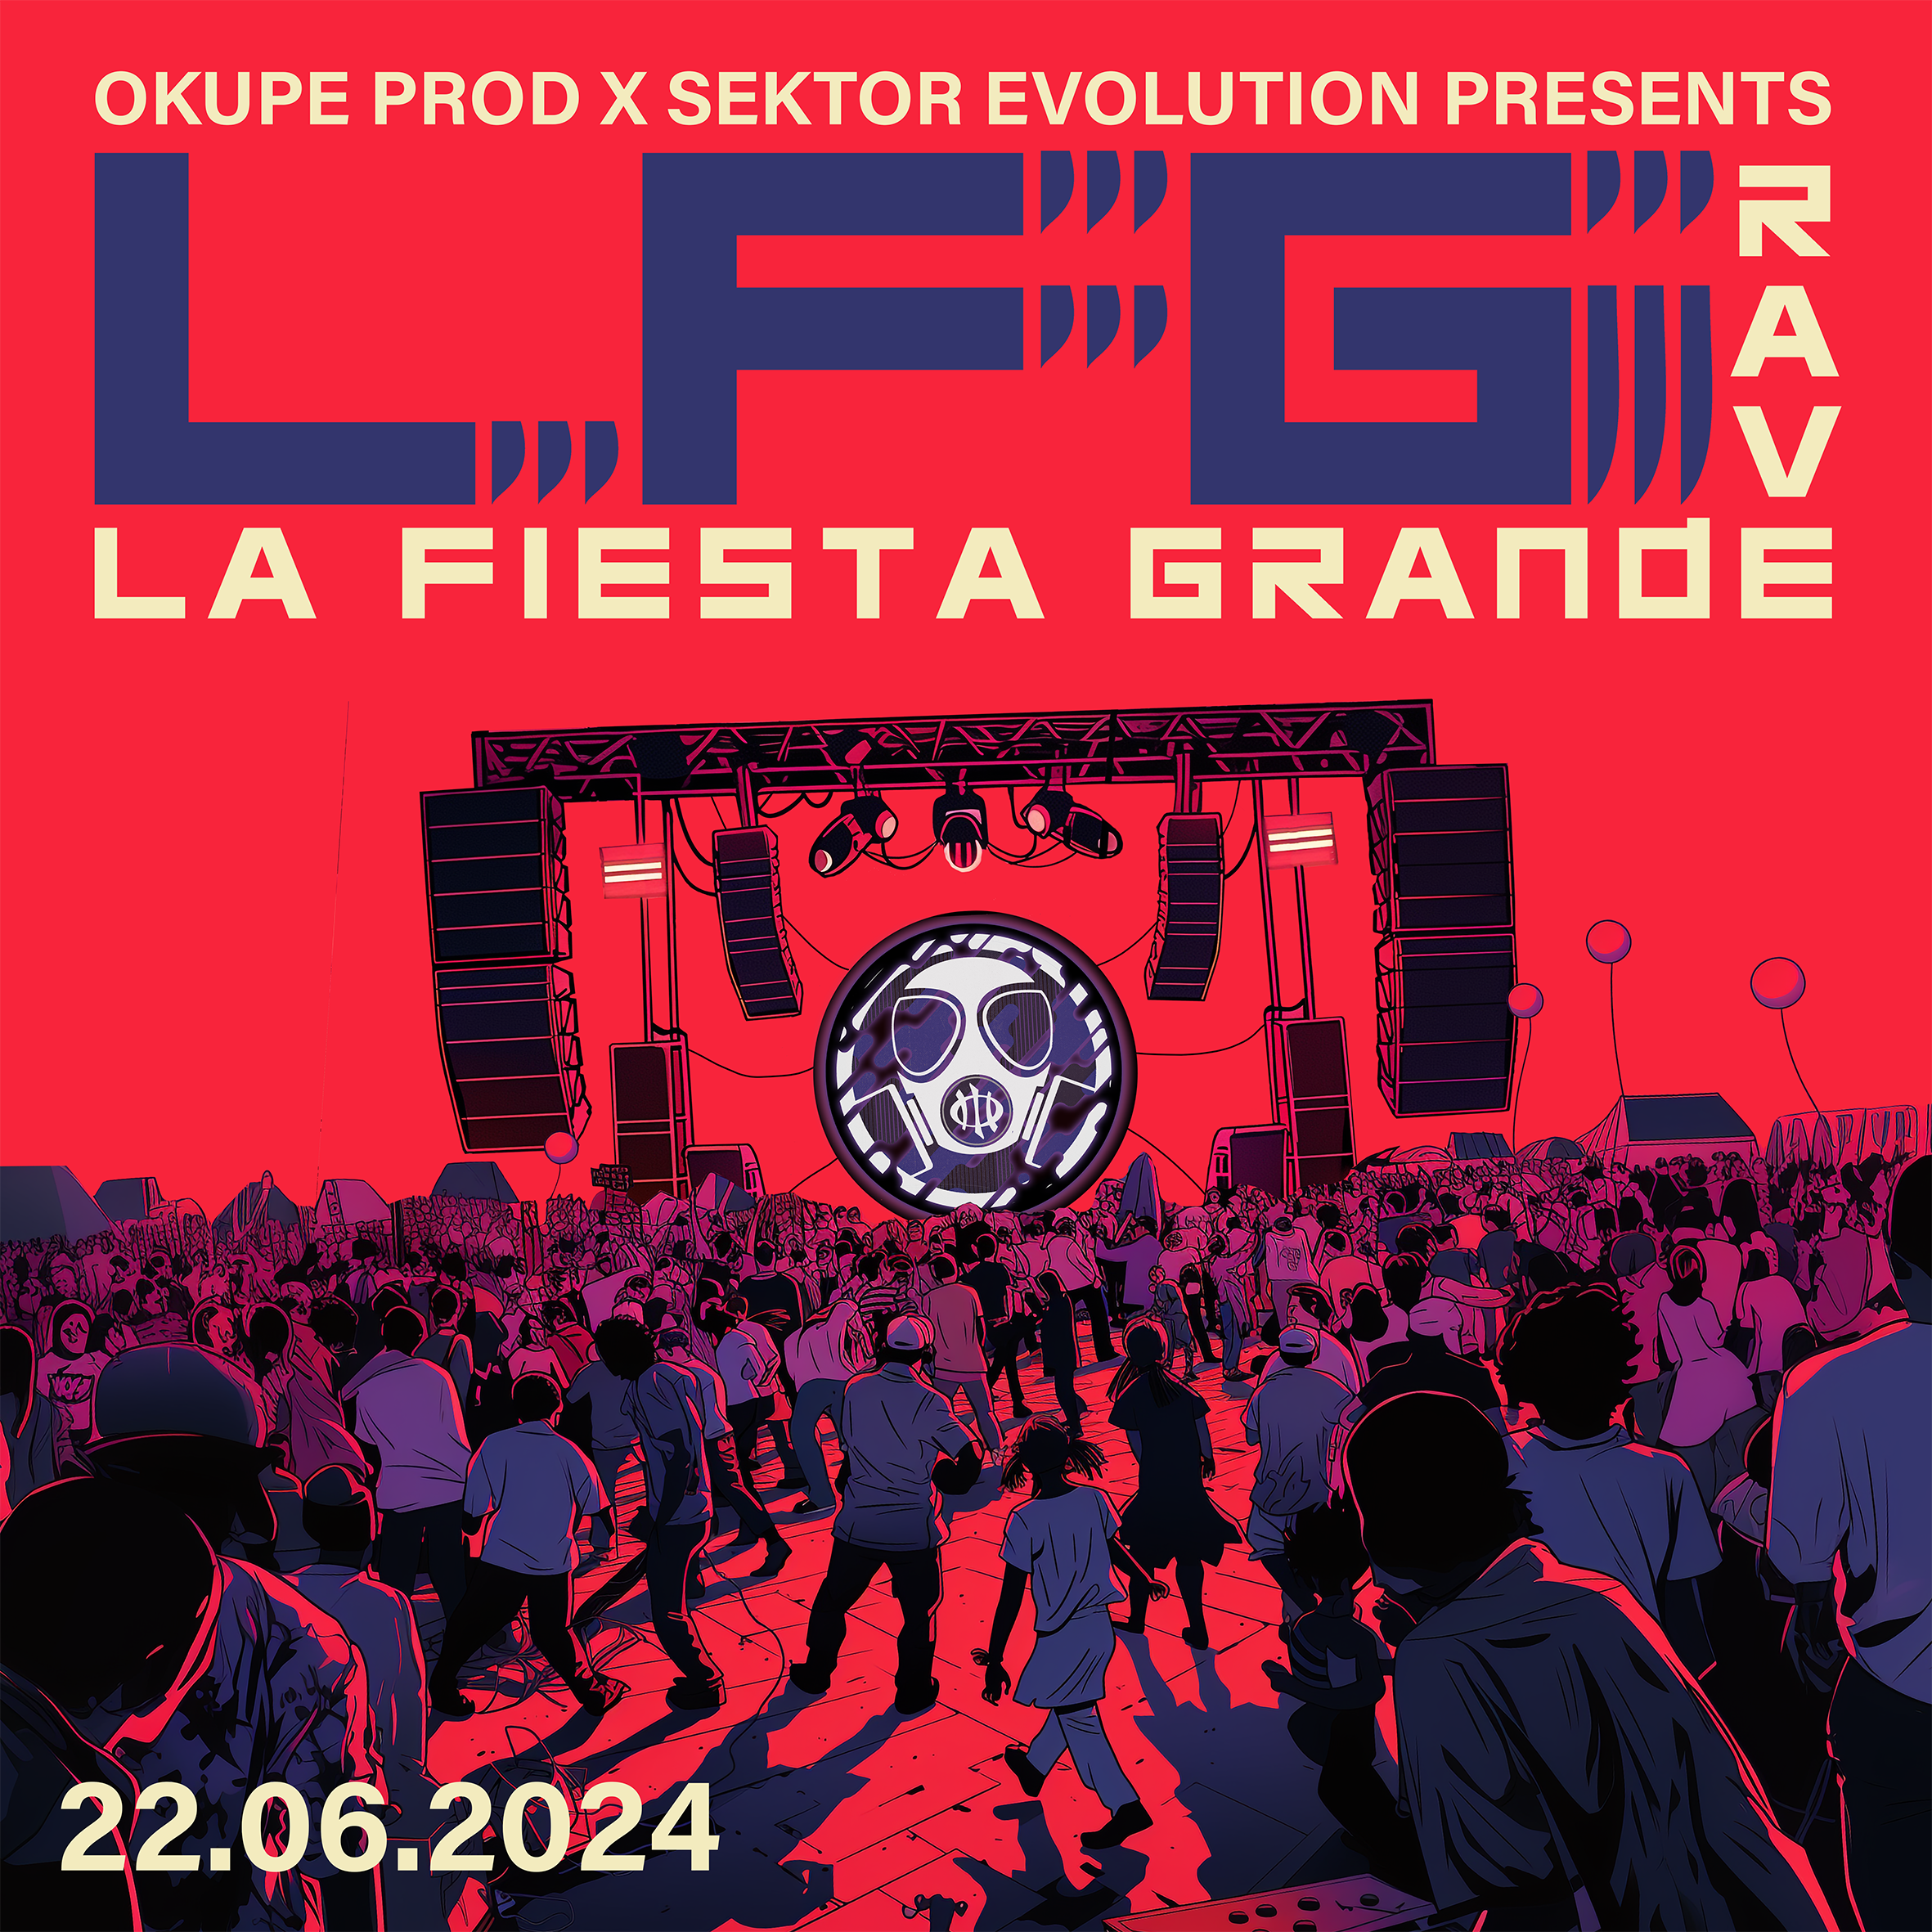 LFG Rave w// Okupe Prod